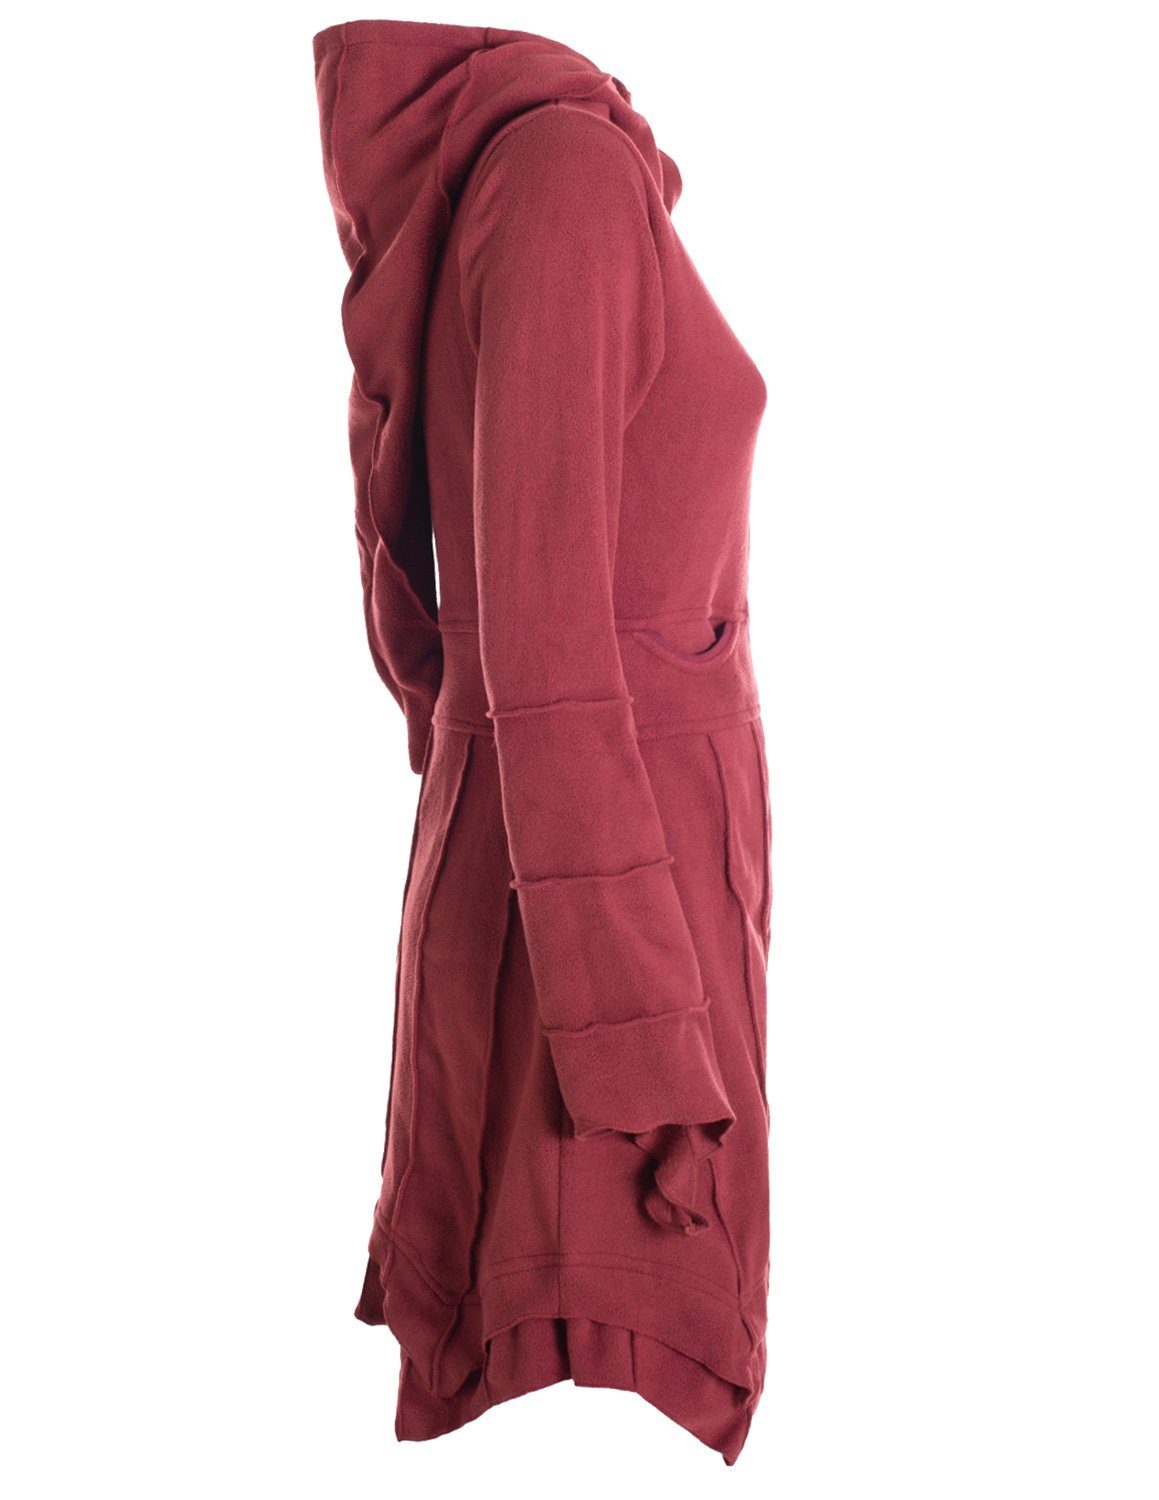 Vishes Kurzmantel Fleecemantel Cardigan Hooded dunkelrot Fleece Boho Gothik, Goa, Ethno, Zipfelkapuzenjacke Style Strickjacke